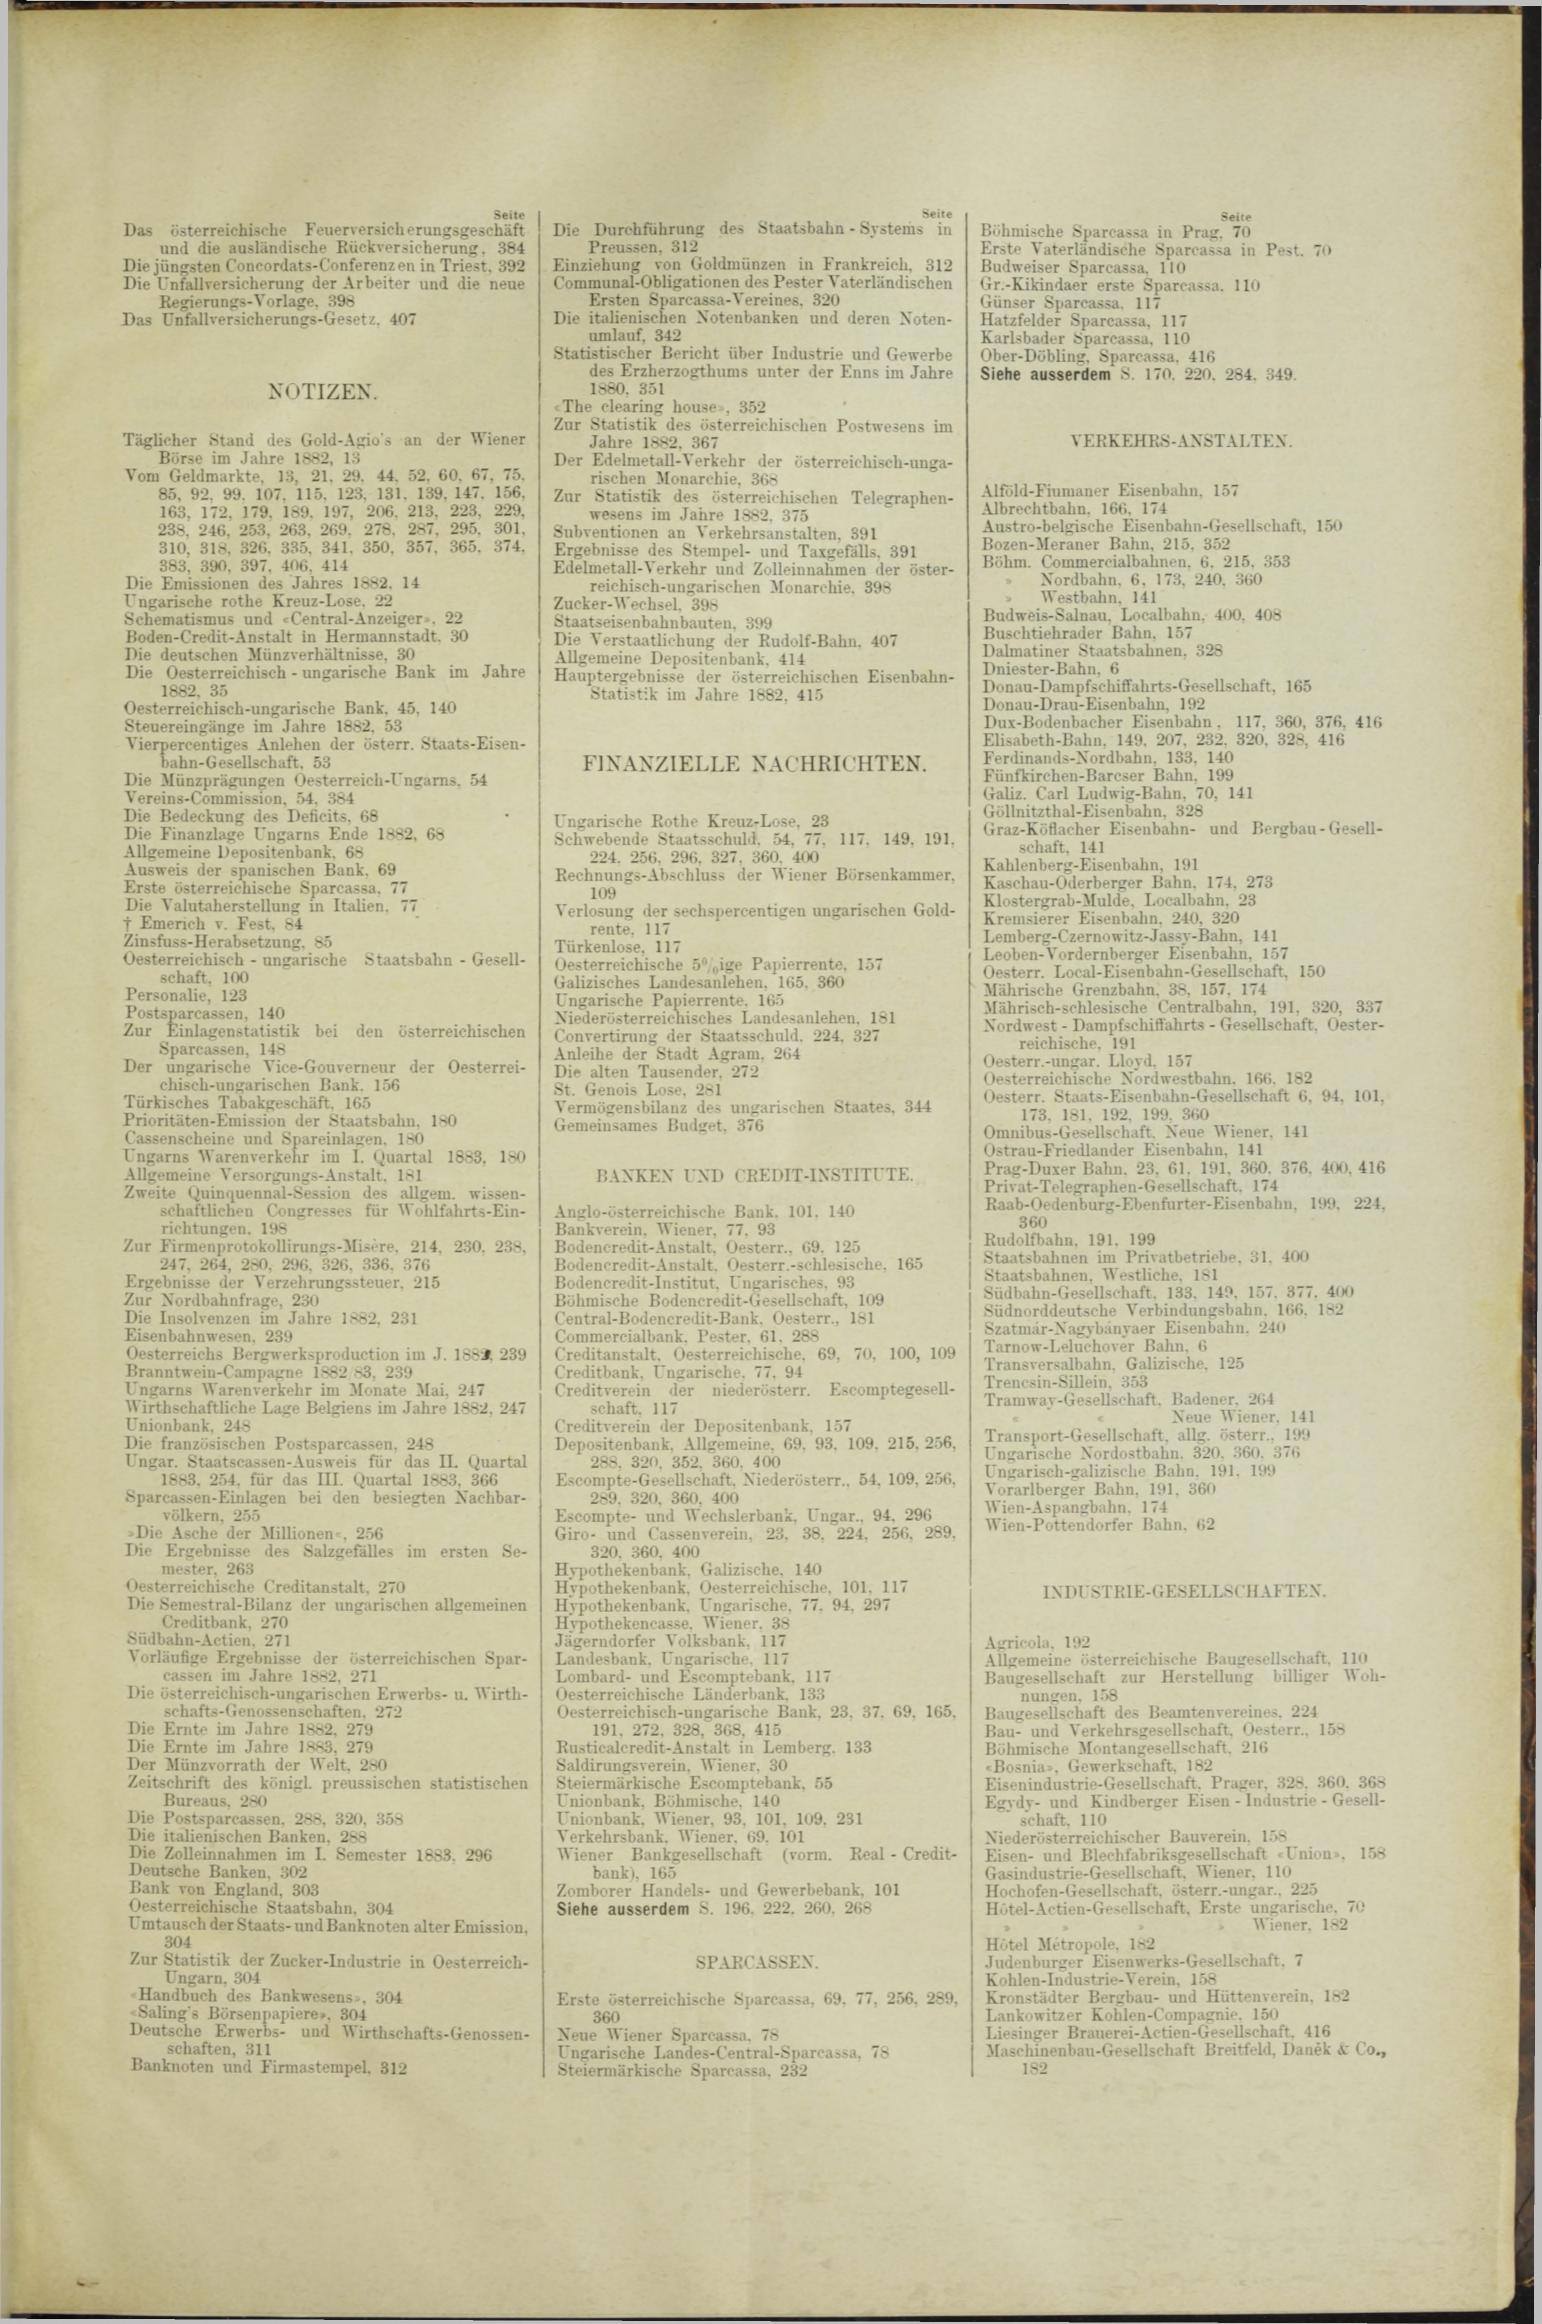 Der Tresor 30.08.1883 - Seite 11